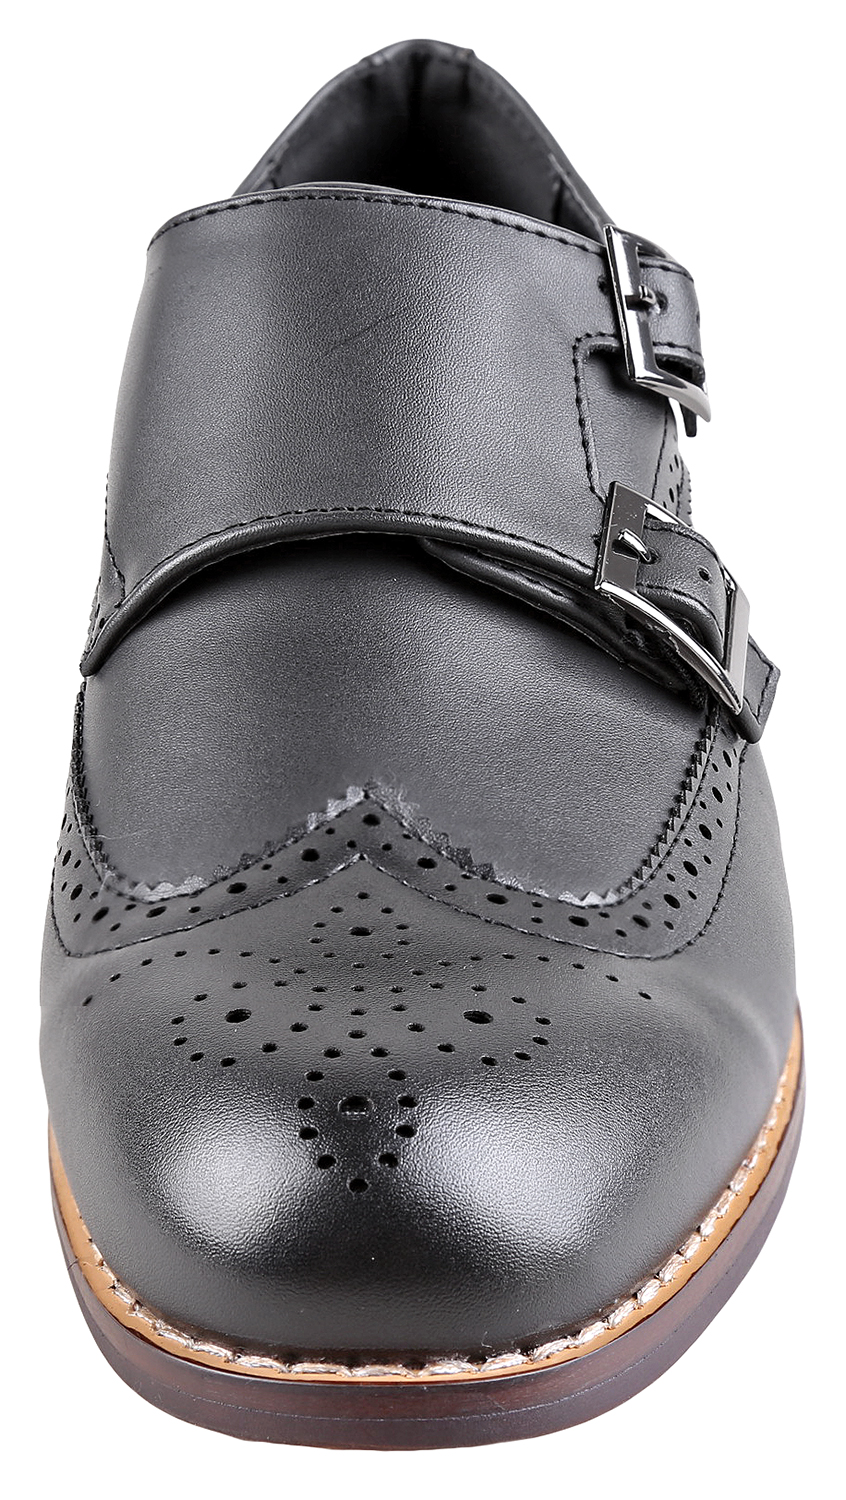 Urban Fox Allen Men's Dress Shoe | Double Monk Strap | Brogue | Wingtip Shoes for Men | Black 11 M US - image 3 of 7